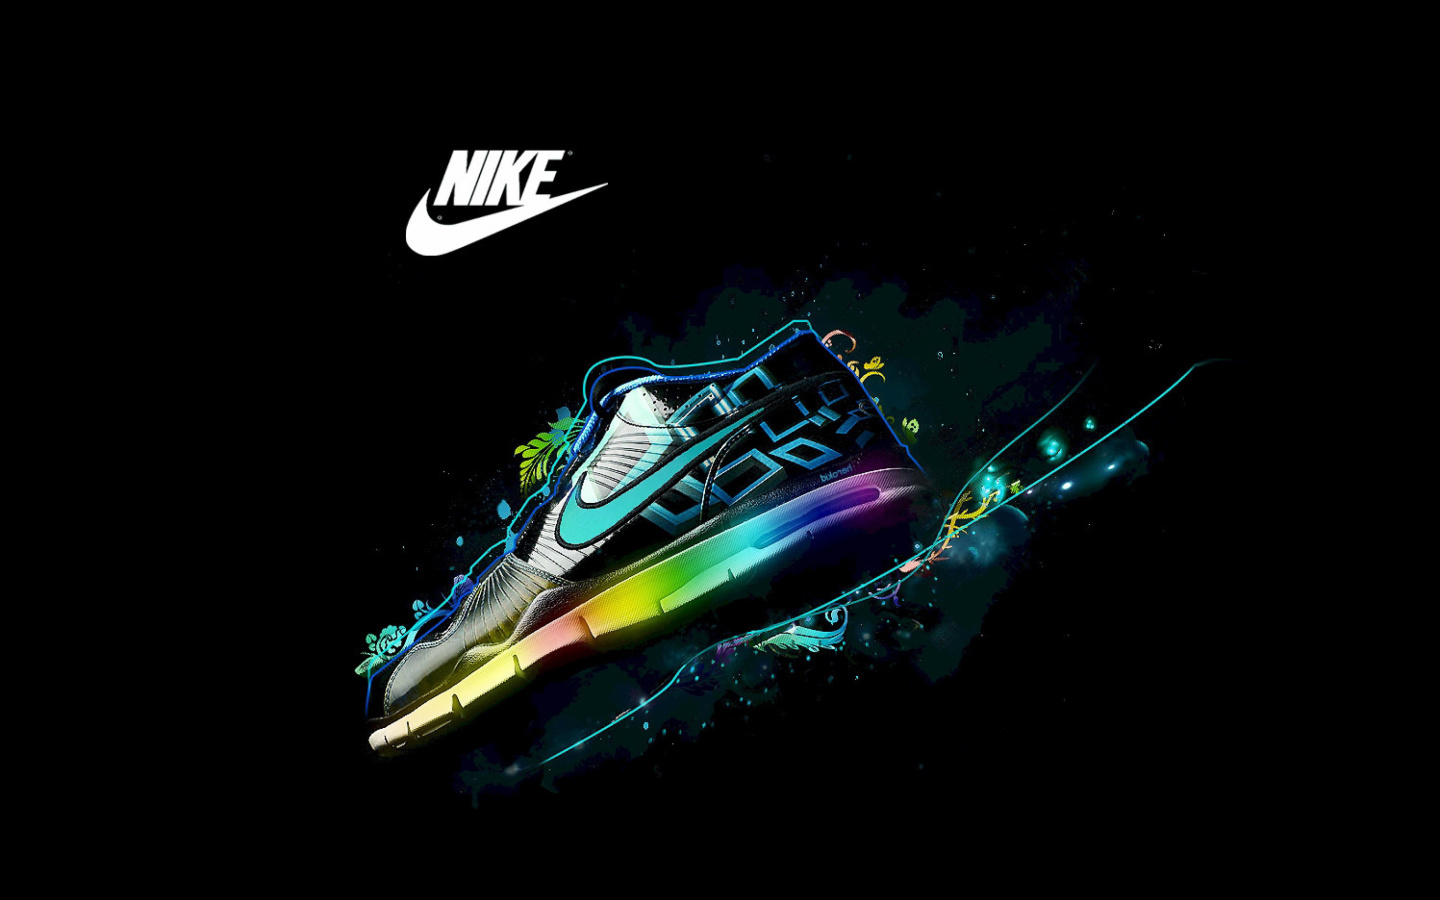 Обои Nike Logo and Nike Air Shoes 1440x900